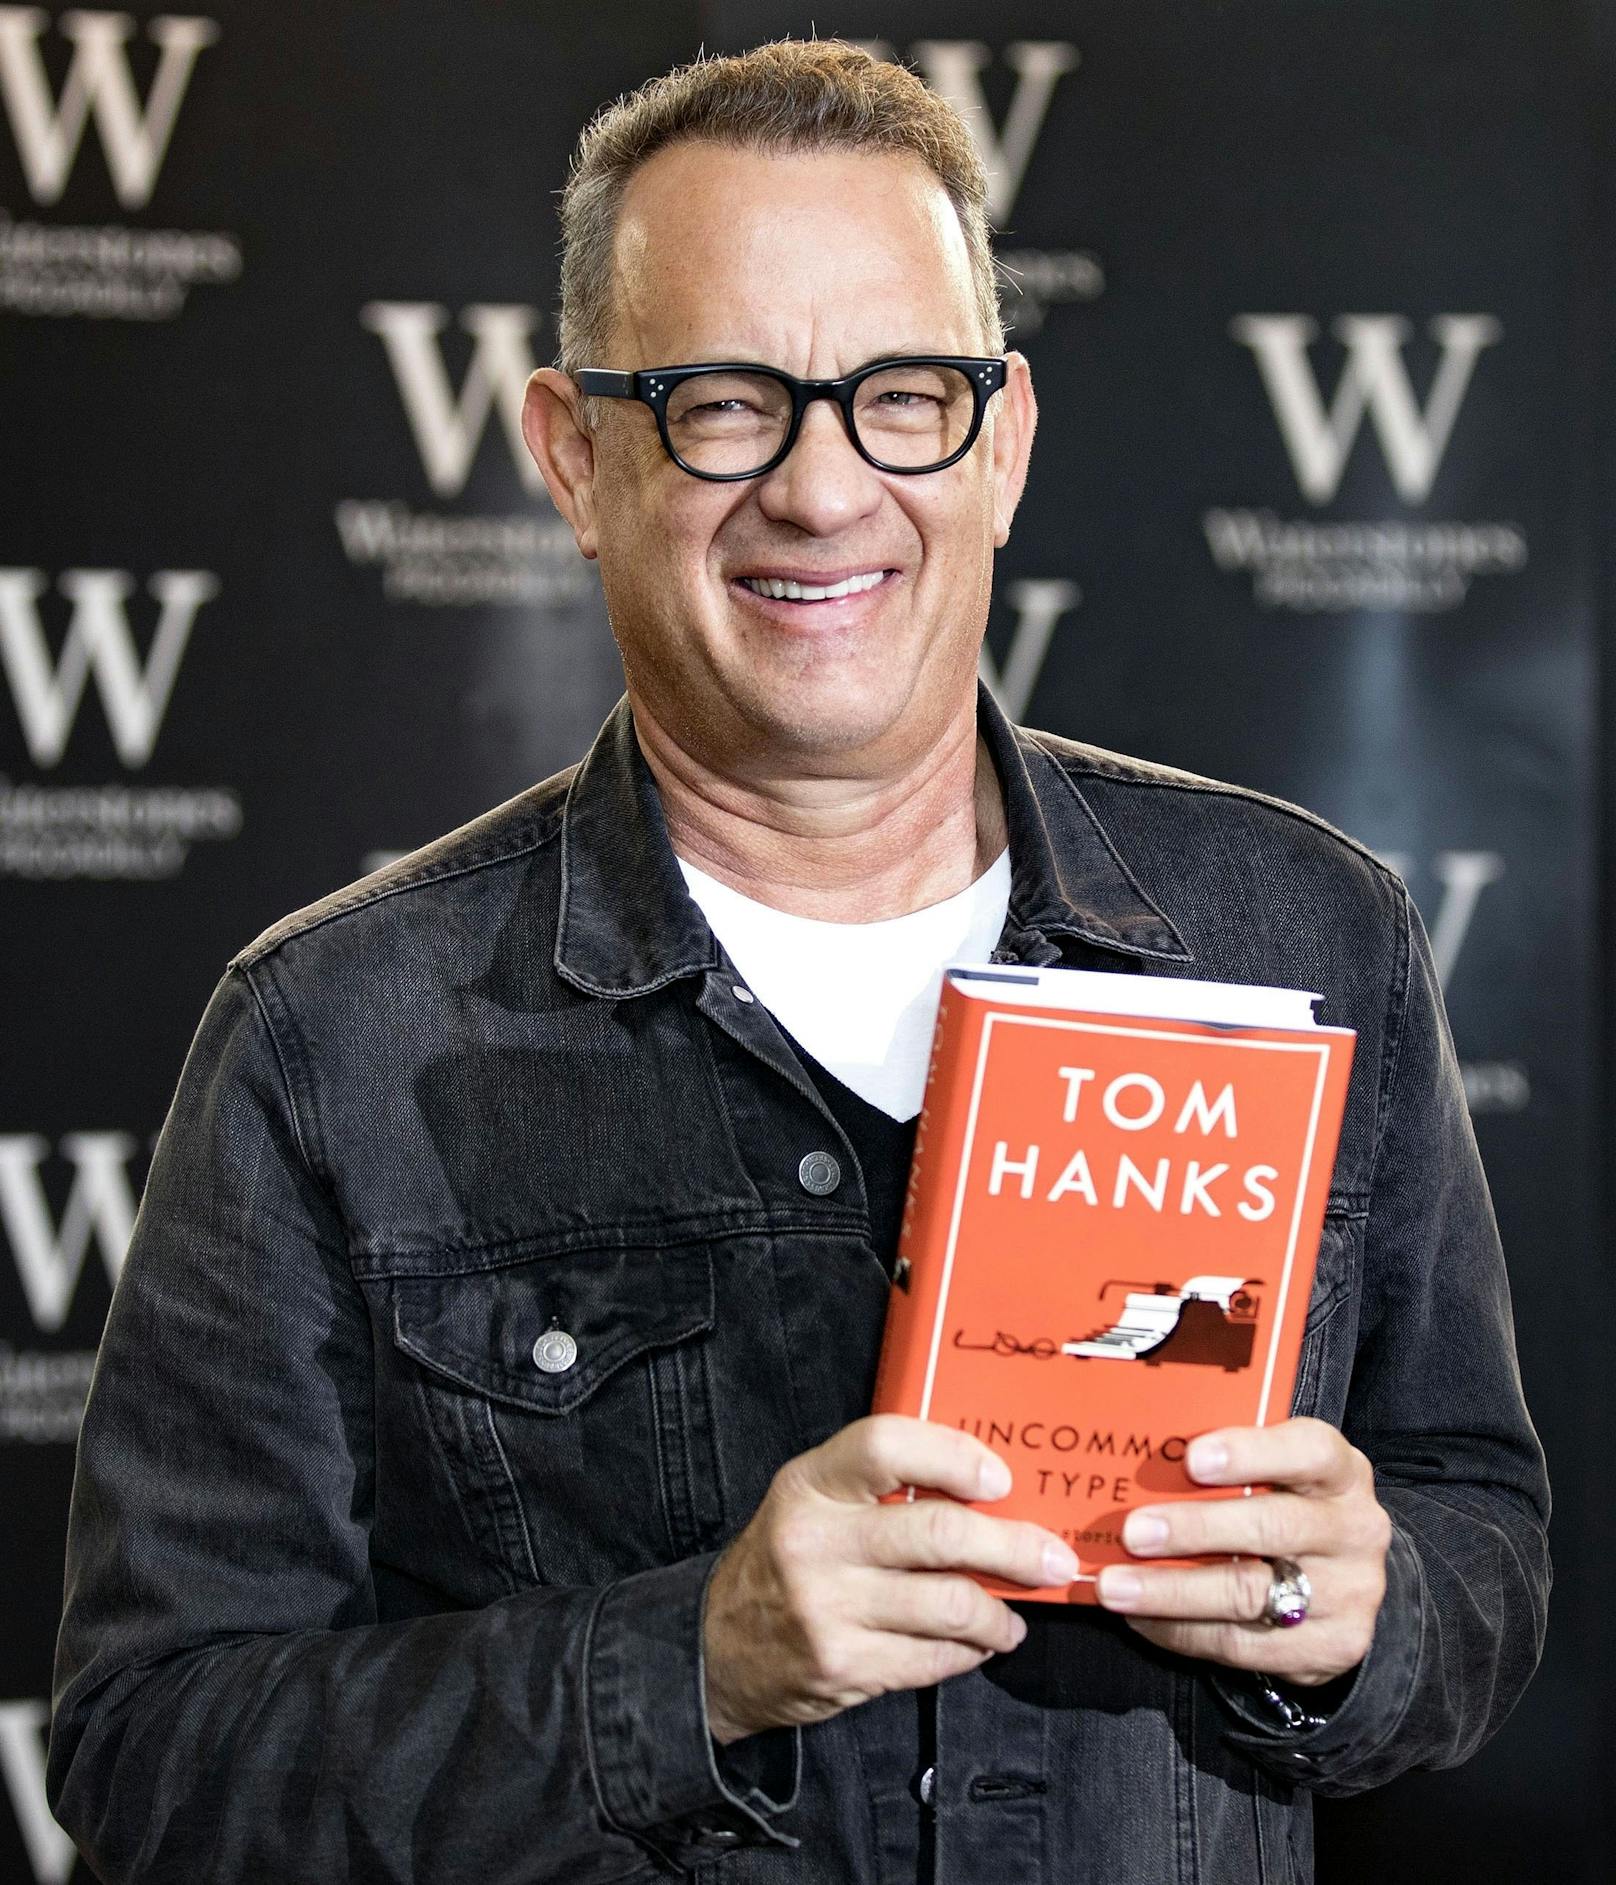 Publikumsliebling <strong>Tom Hanks</strong> schreibt am liebsten Kurzgeschichten, wenn er nicht gerade vor der Kamera steht. Ein Sammelband trägt den Titel "Uncommon Type".